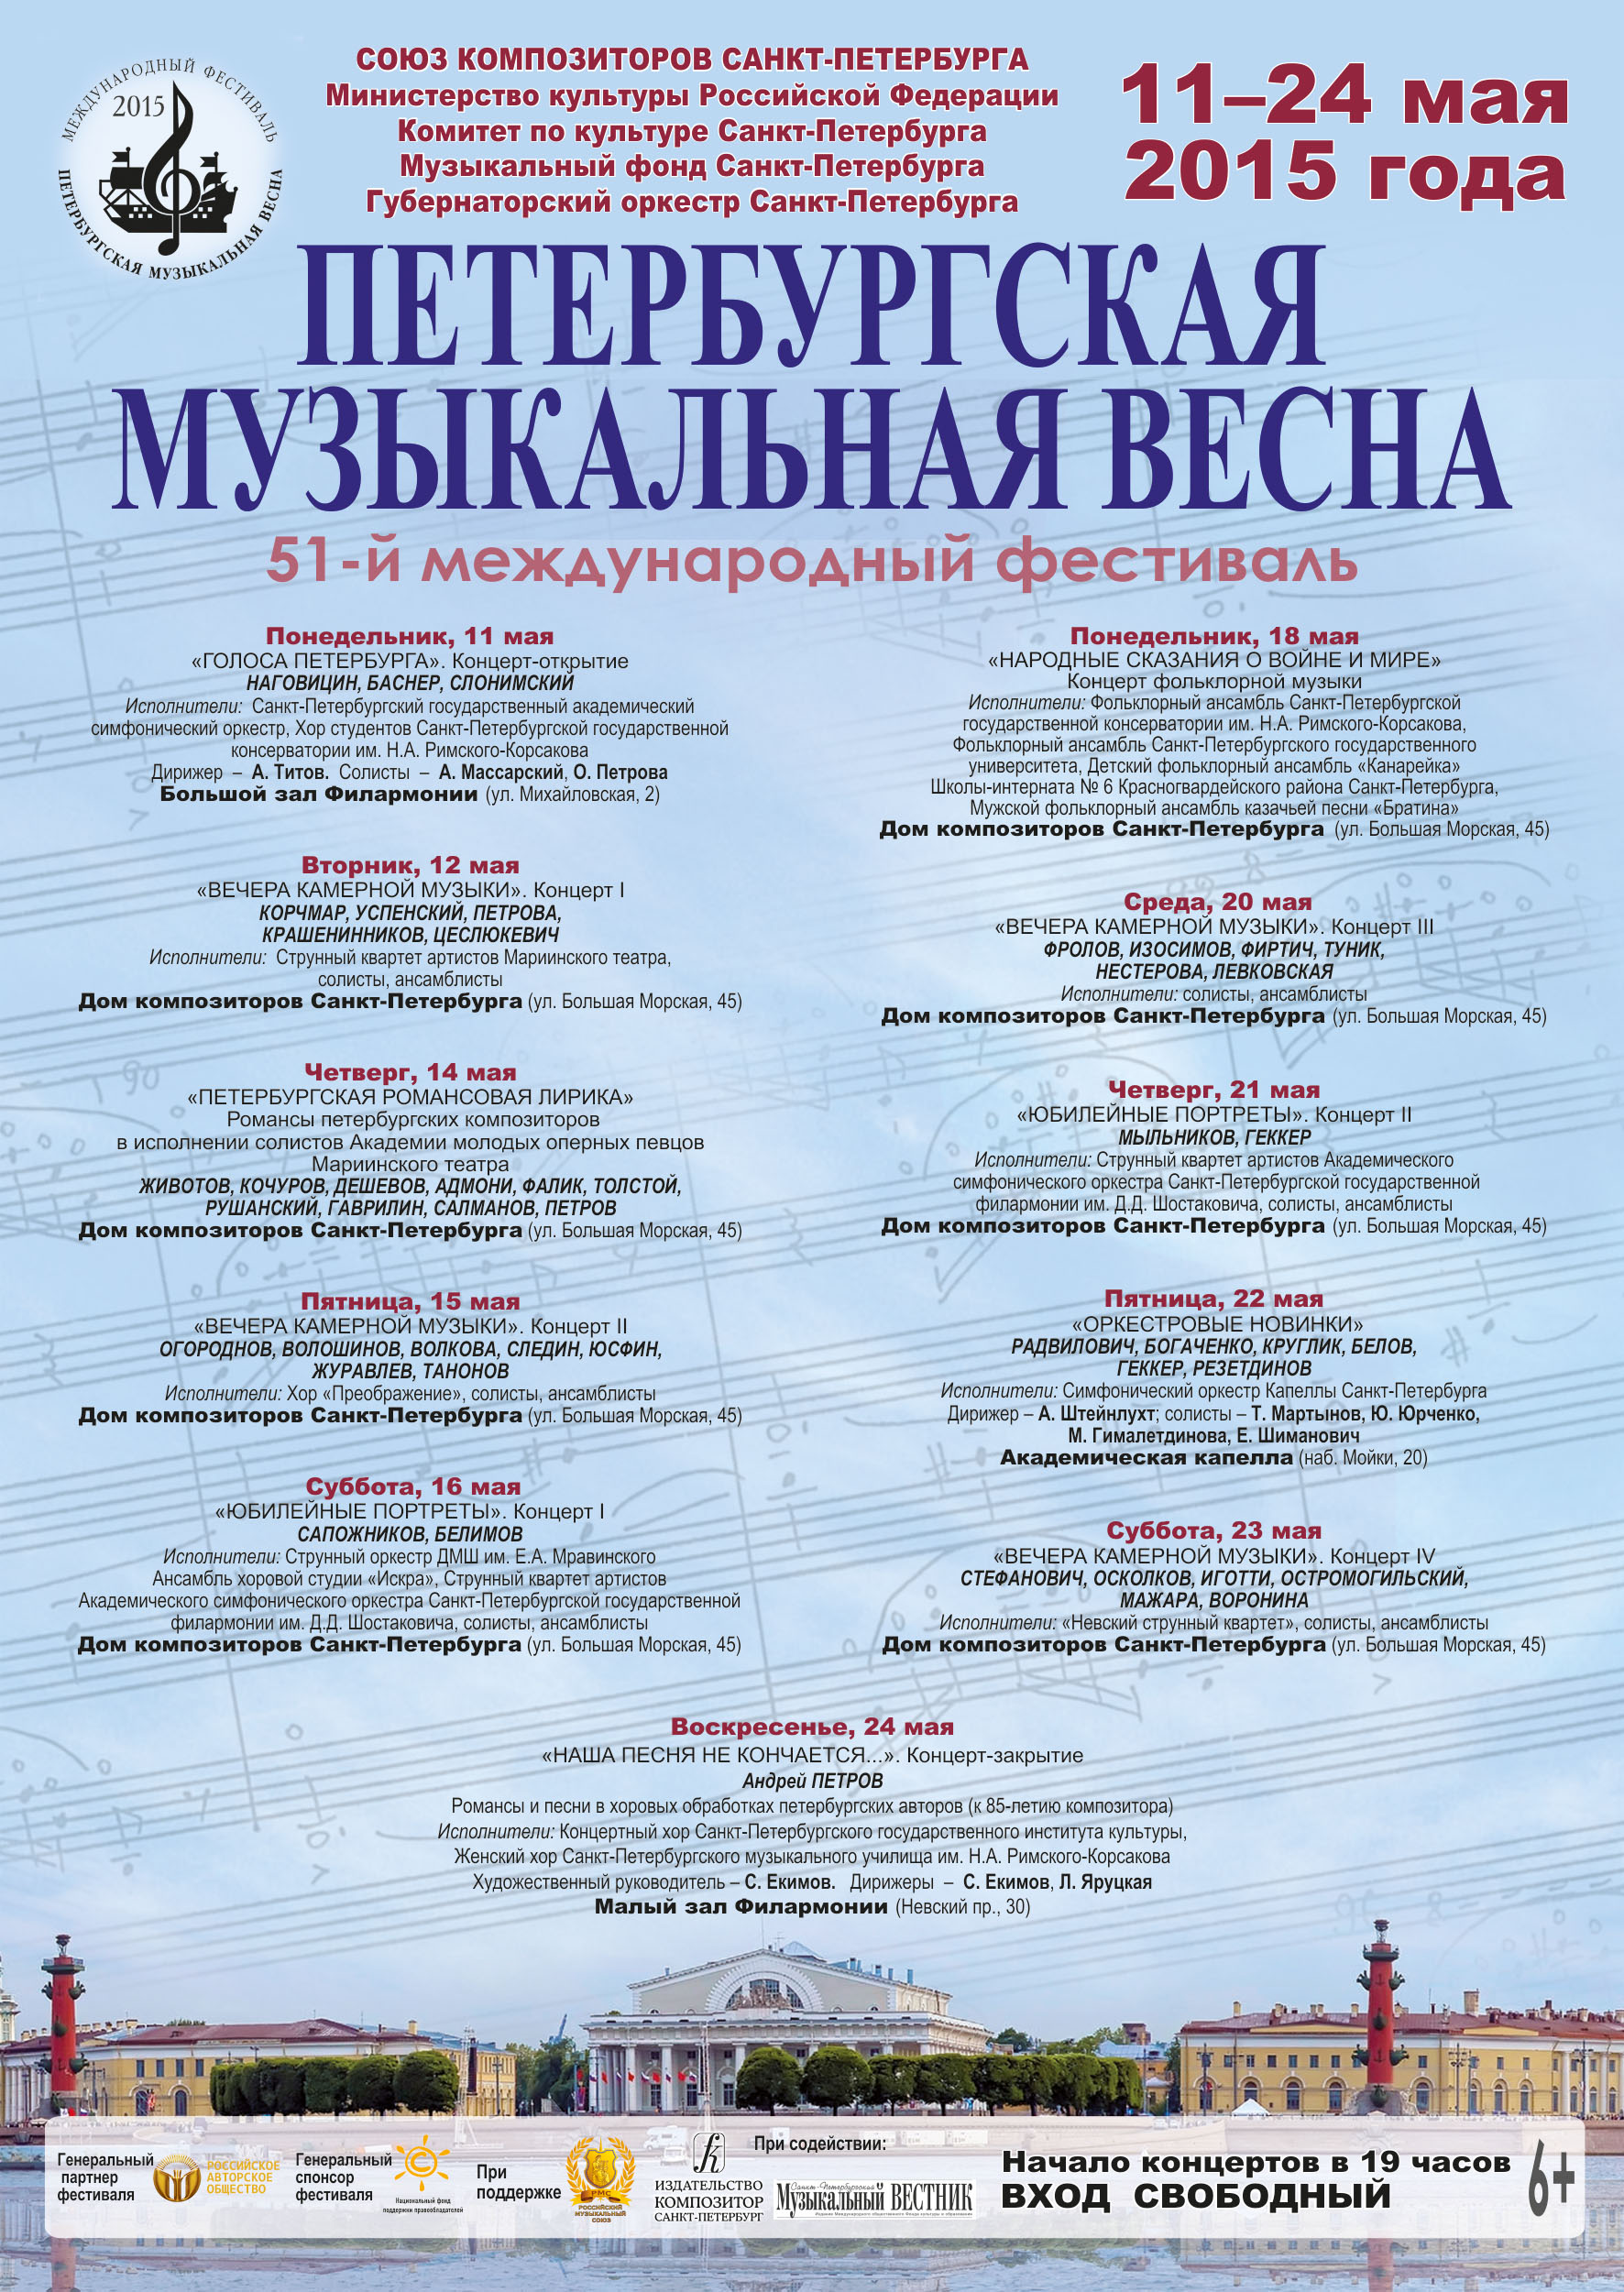 Фестиваль «Петербургская музыкальная весна» проходит при поддержке НФПП